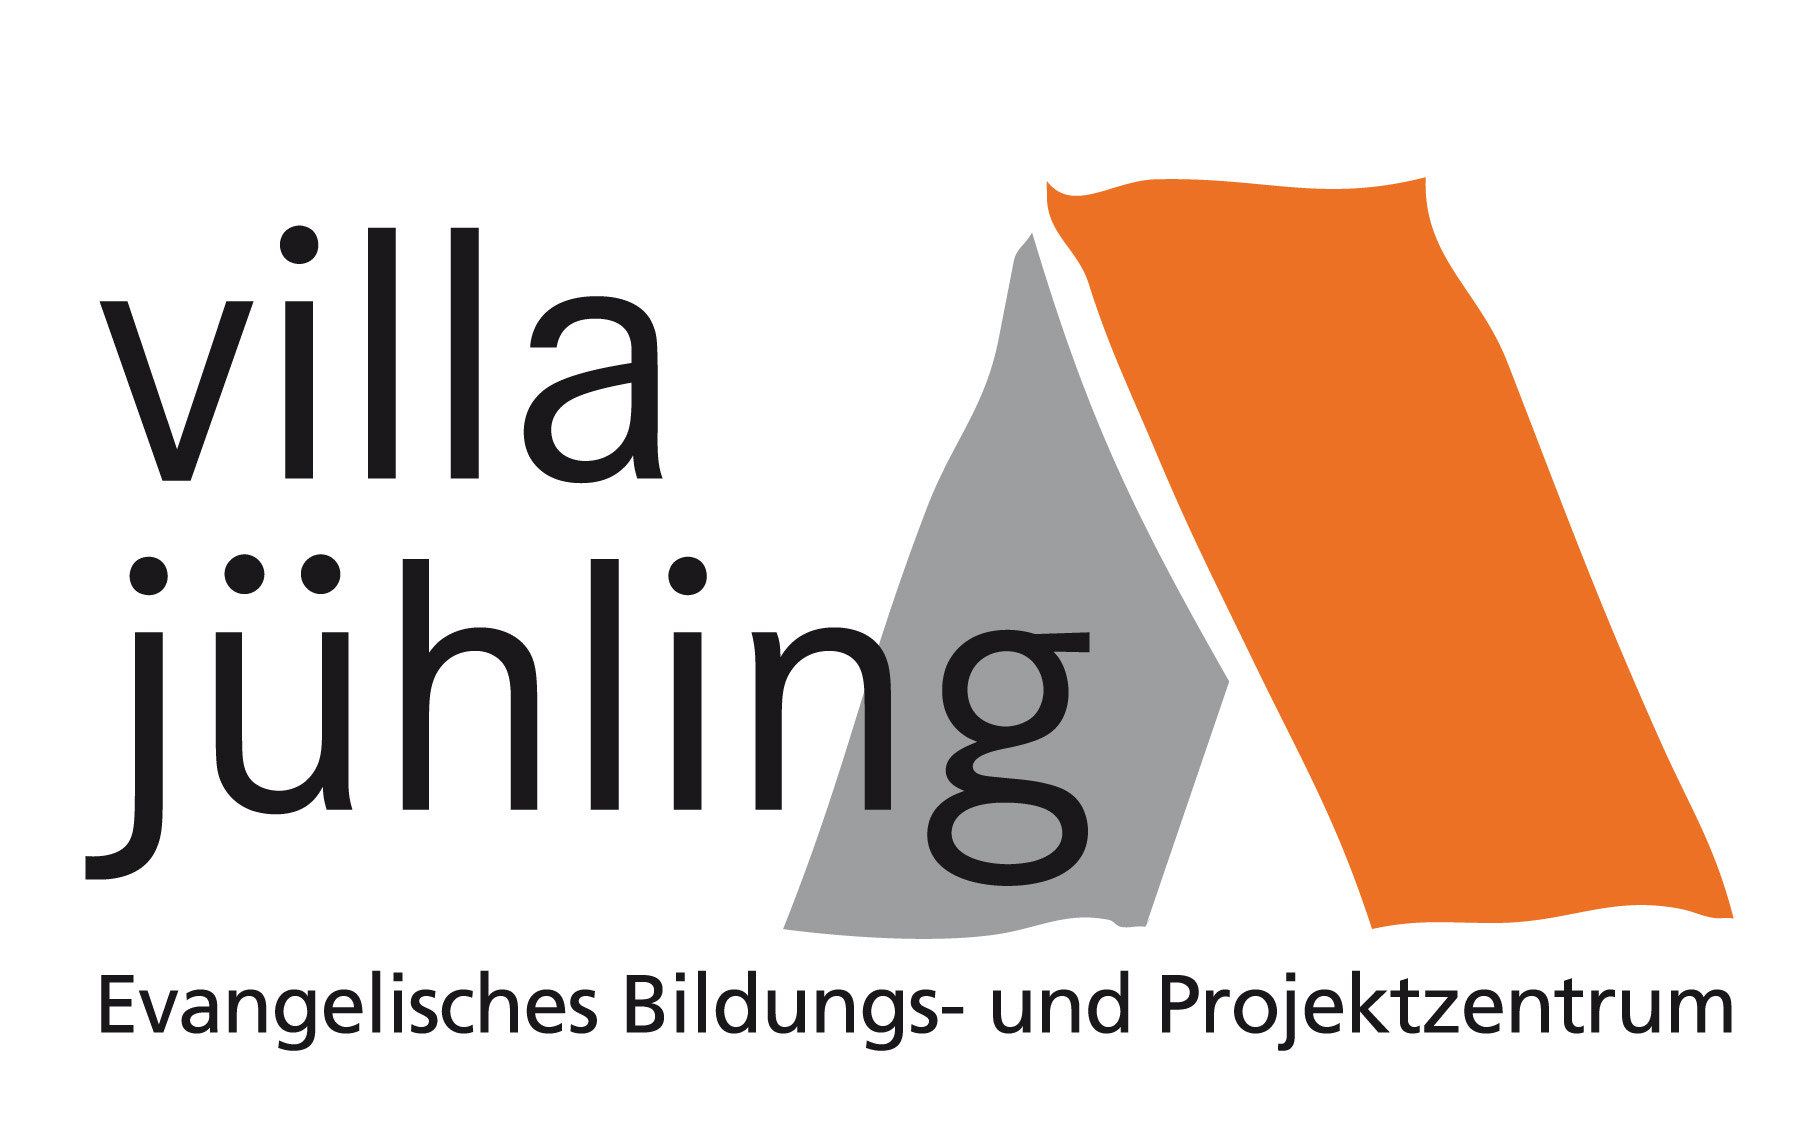 Evangelisches Bildungs- und Projektzentrum Villa Jühling e.V. in Halle (Saale)